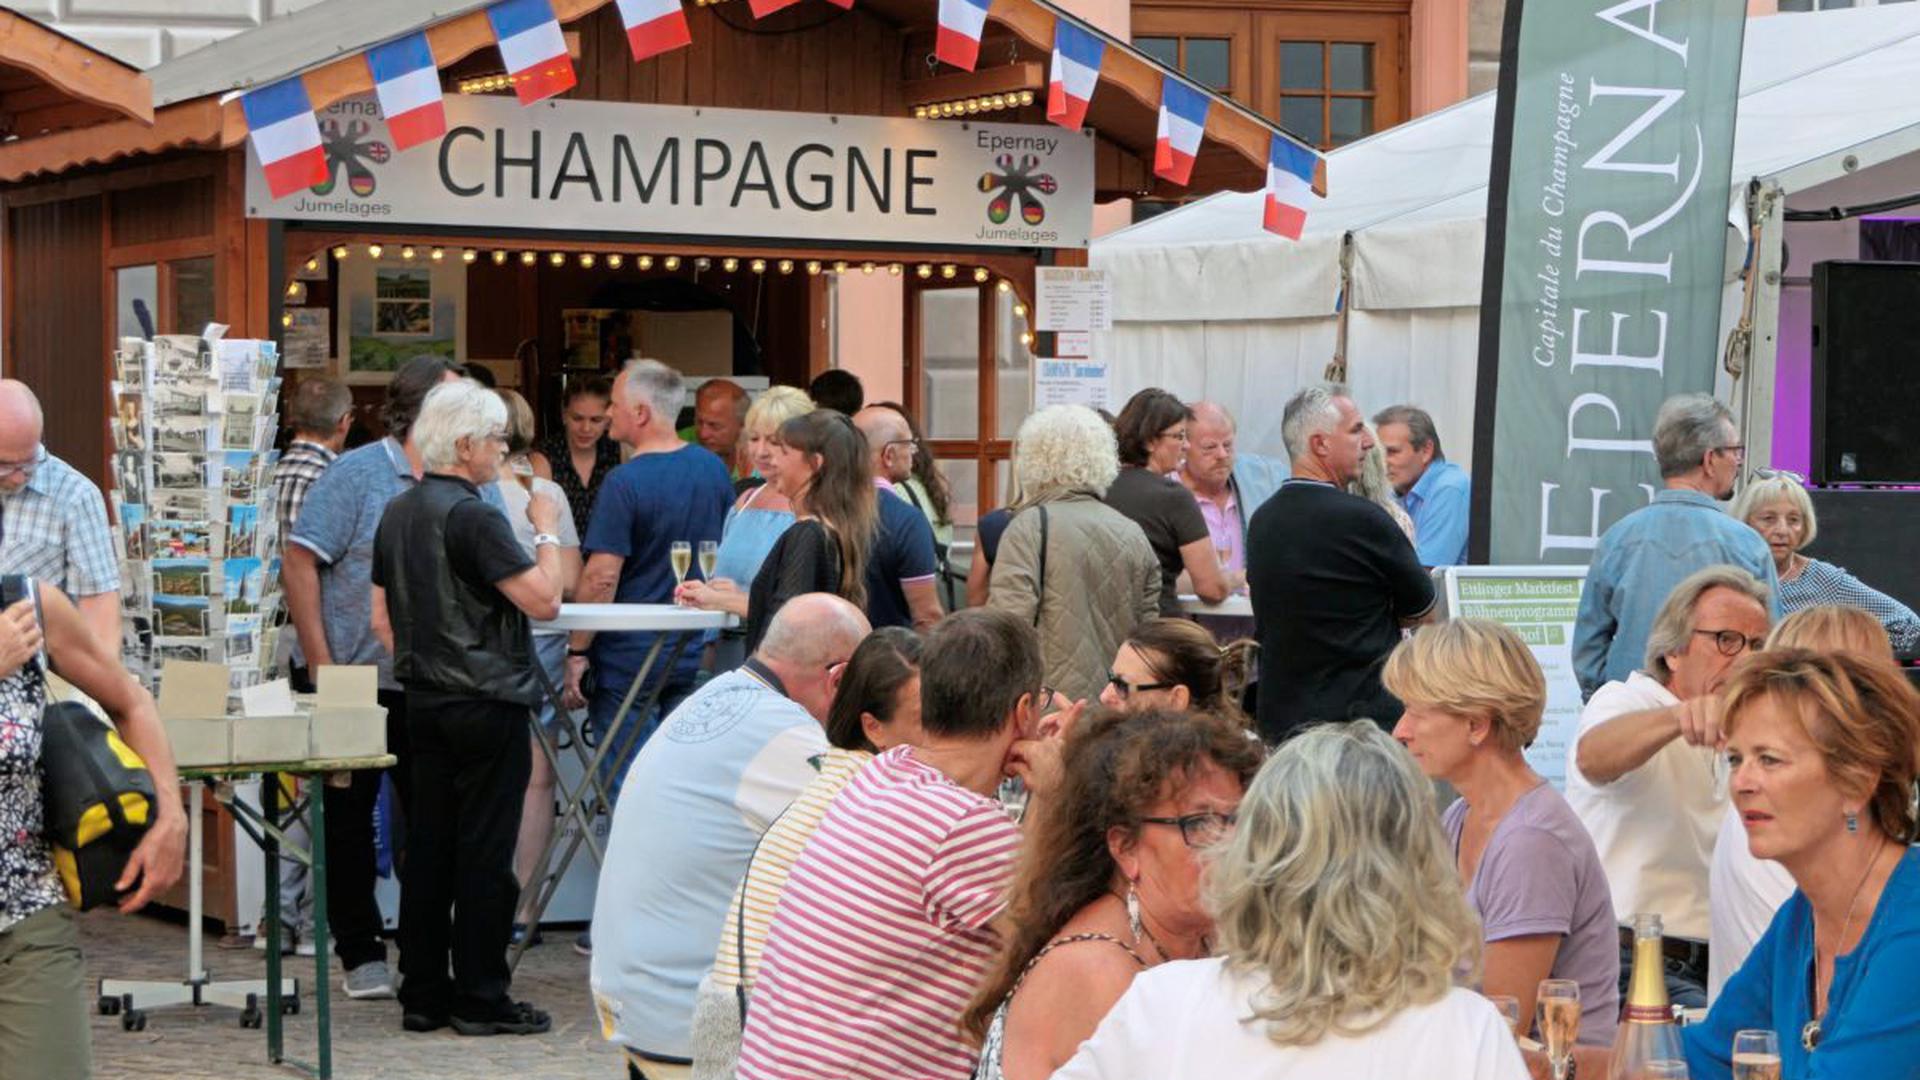 Der Champagnerstand im Schlosshof der Partnerstadt Epernay wird gut angenommen.